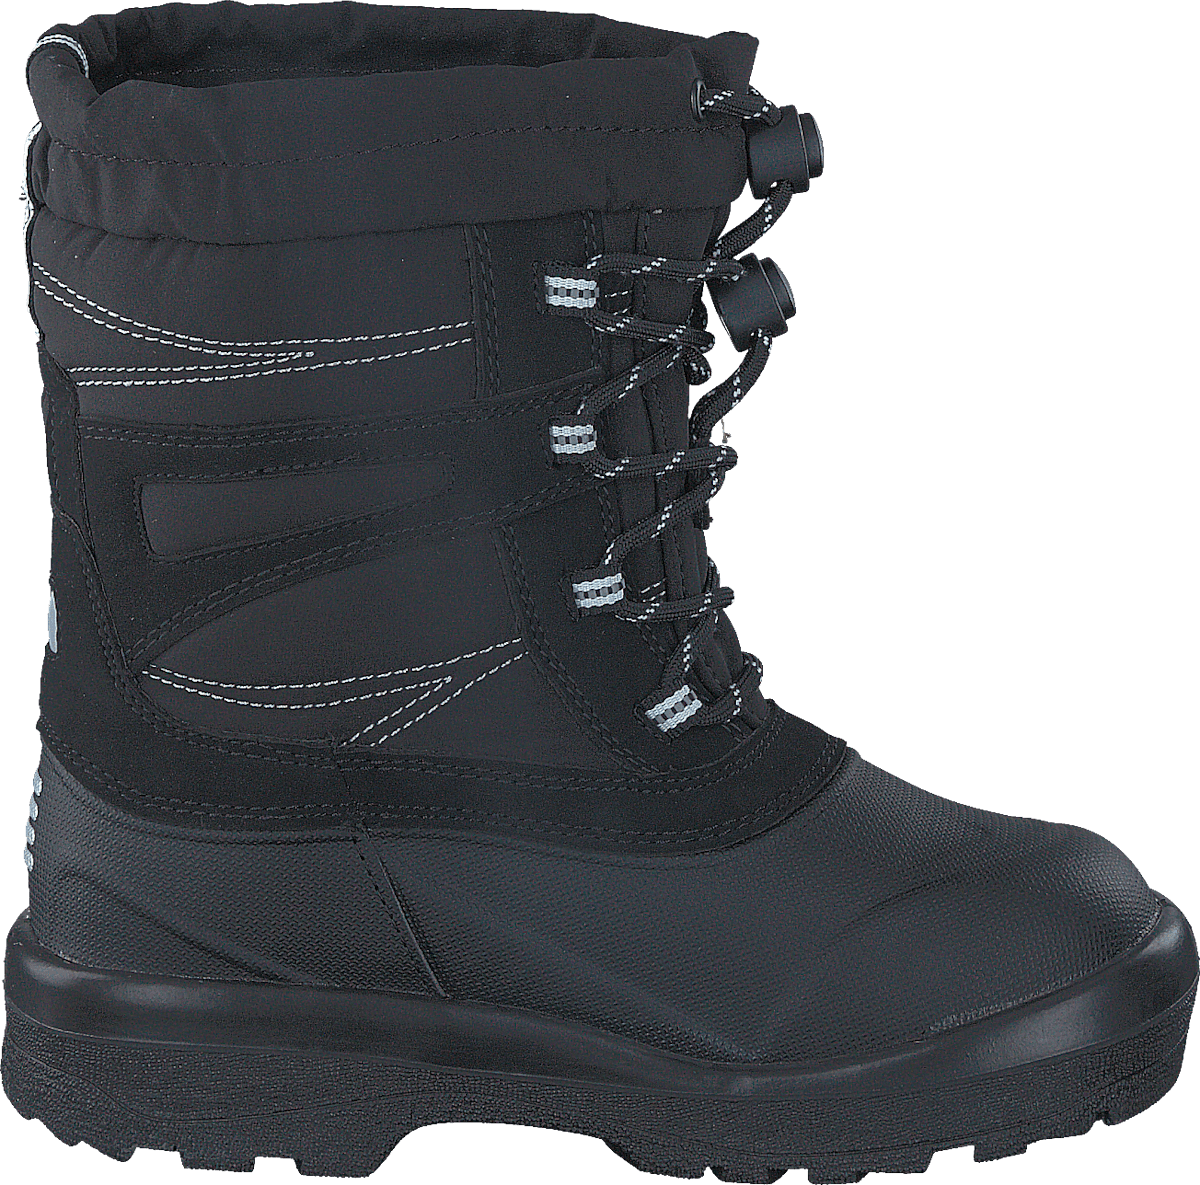 430-2498 Waterproof Warm Lined Black